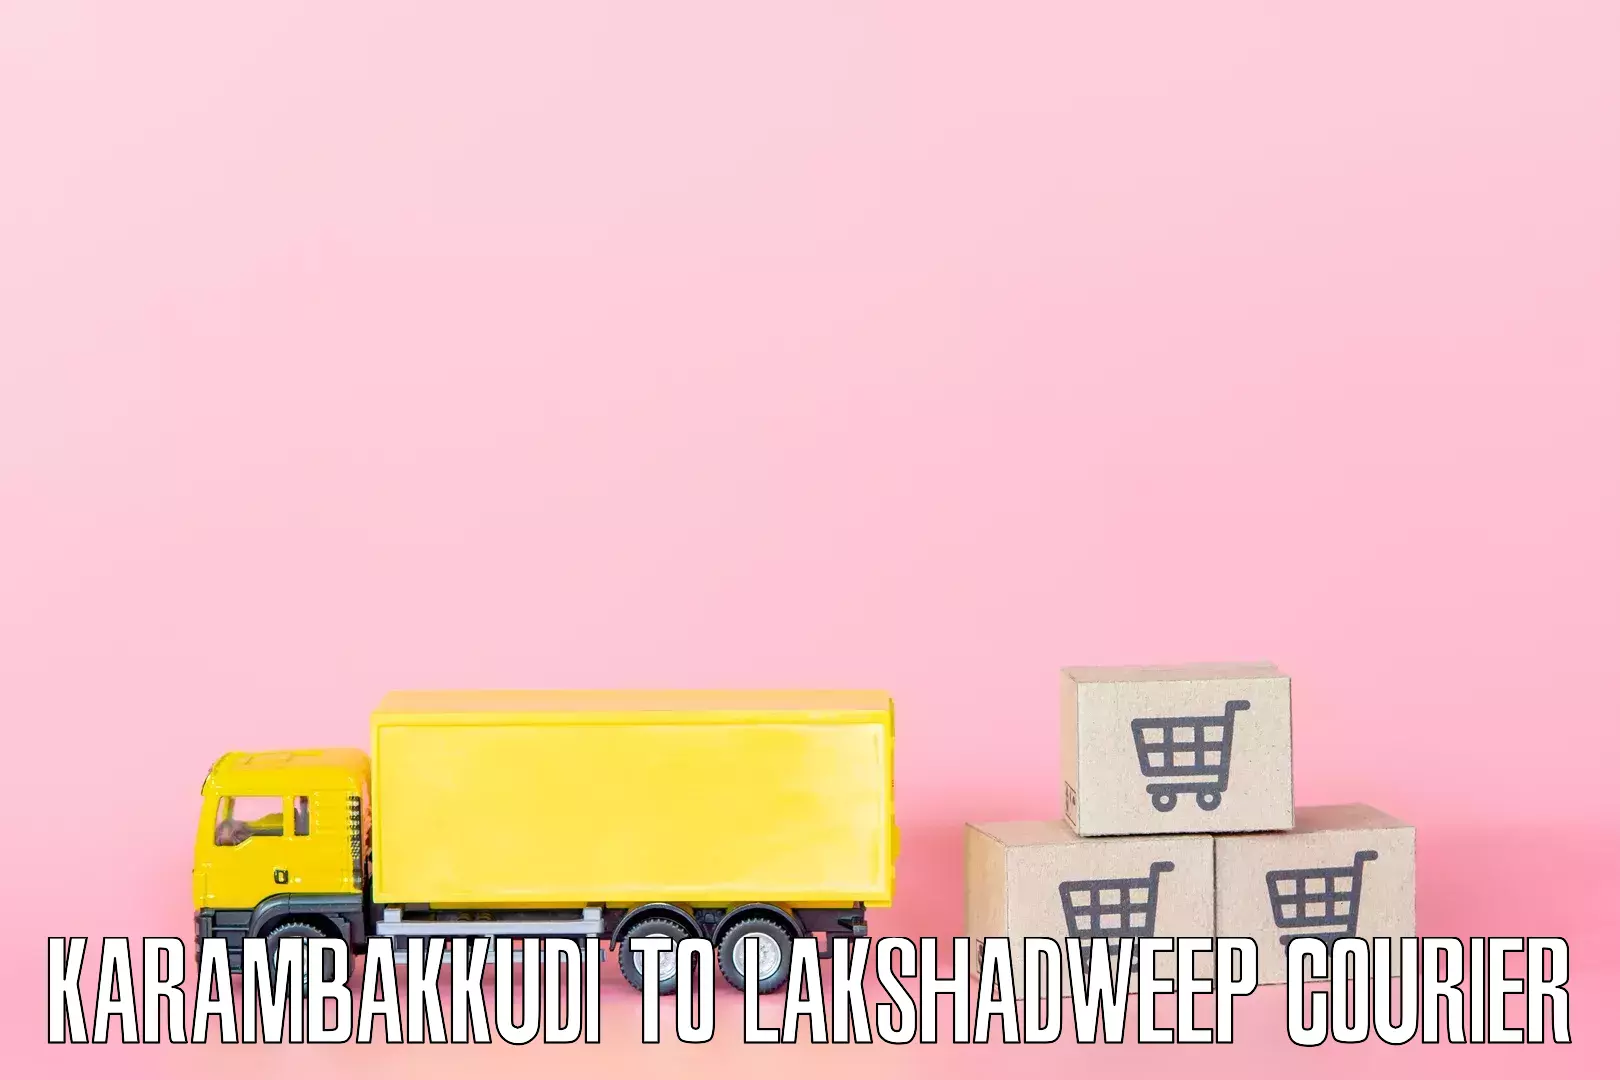 Nationwide furniture transport Karambakkudi to Lakshadweep